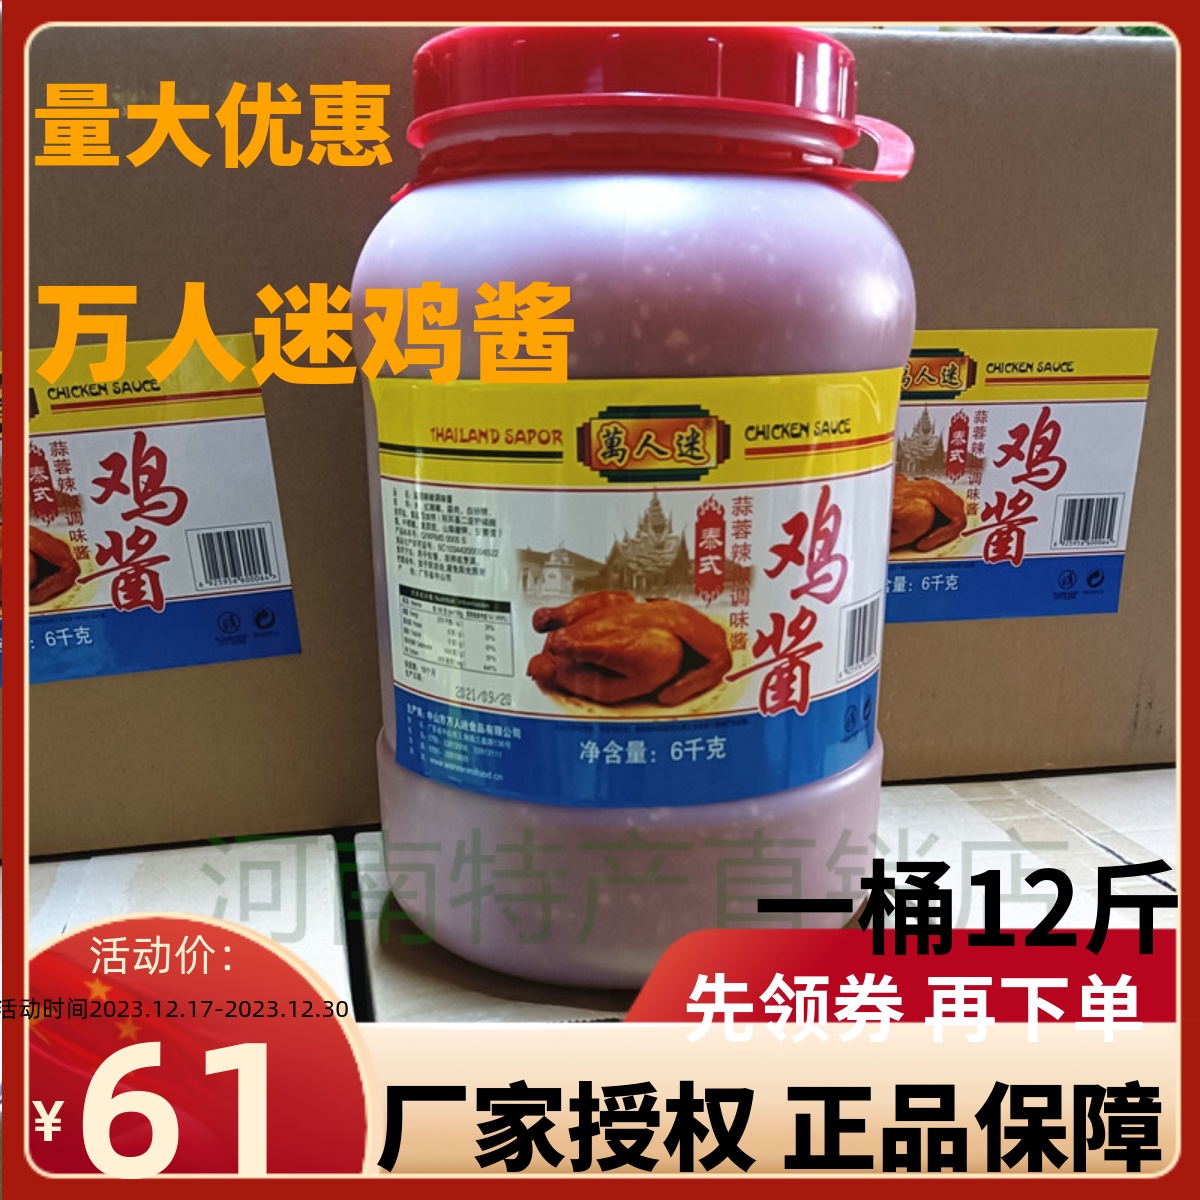 大桶 万人迷鸡酱6kg*1桶泰式蒜蓉辣椒调味酱泰国风味商用工厂专用